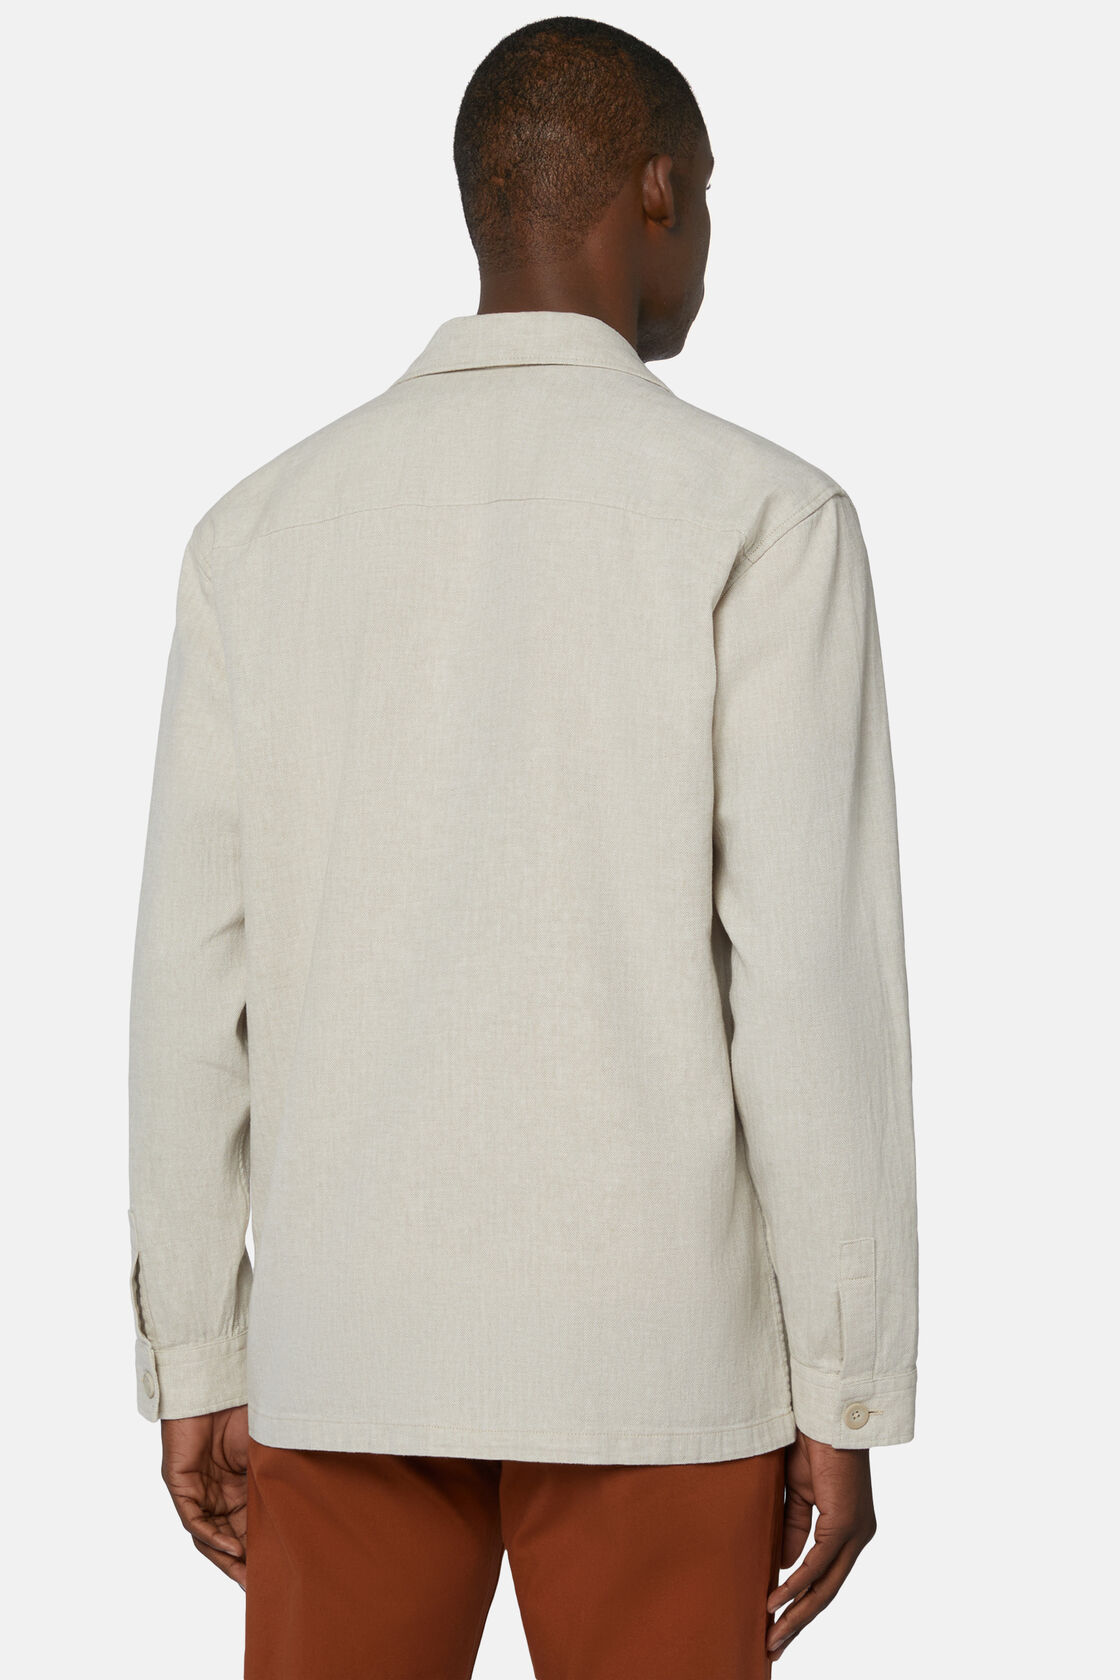 Linen Cotton Shirt Jacket, Sand, hi-res